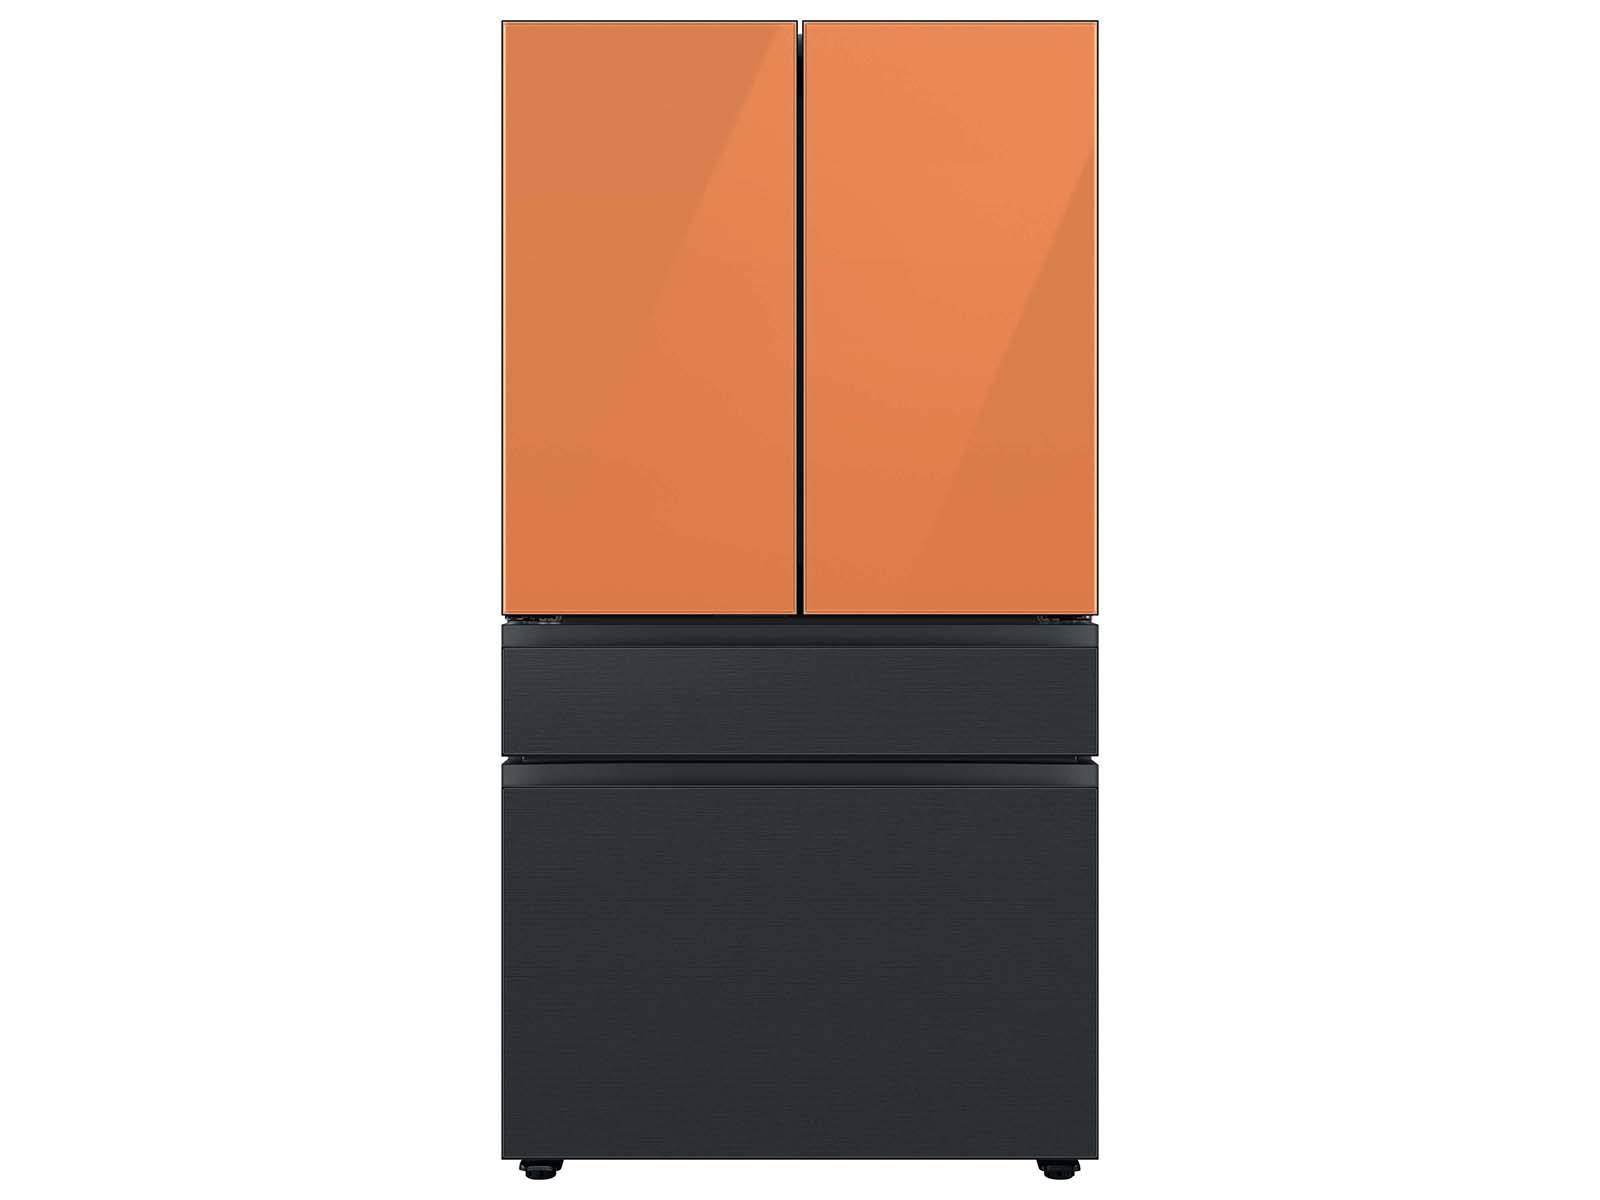 Thumbnail image of Bespoke 4-Door French Door Refrigerator Panel in Clementine Glass - Top Panel